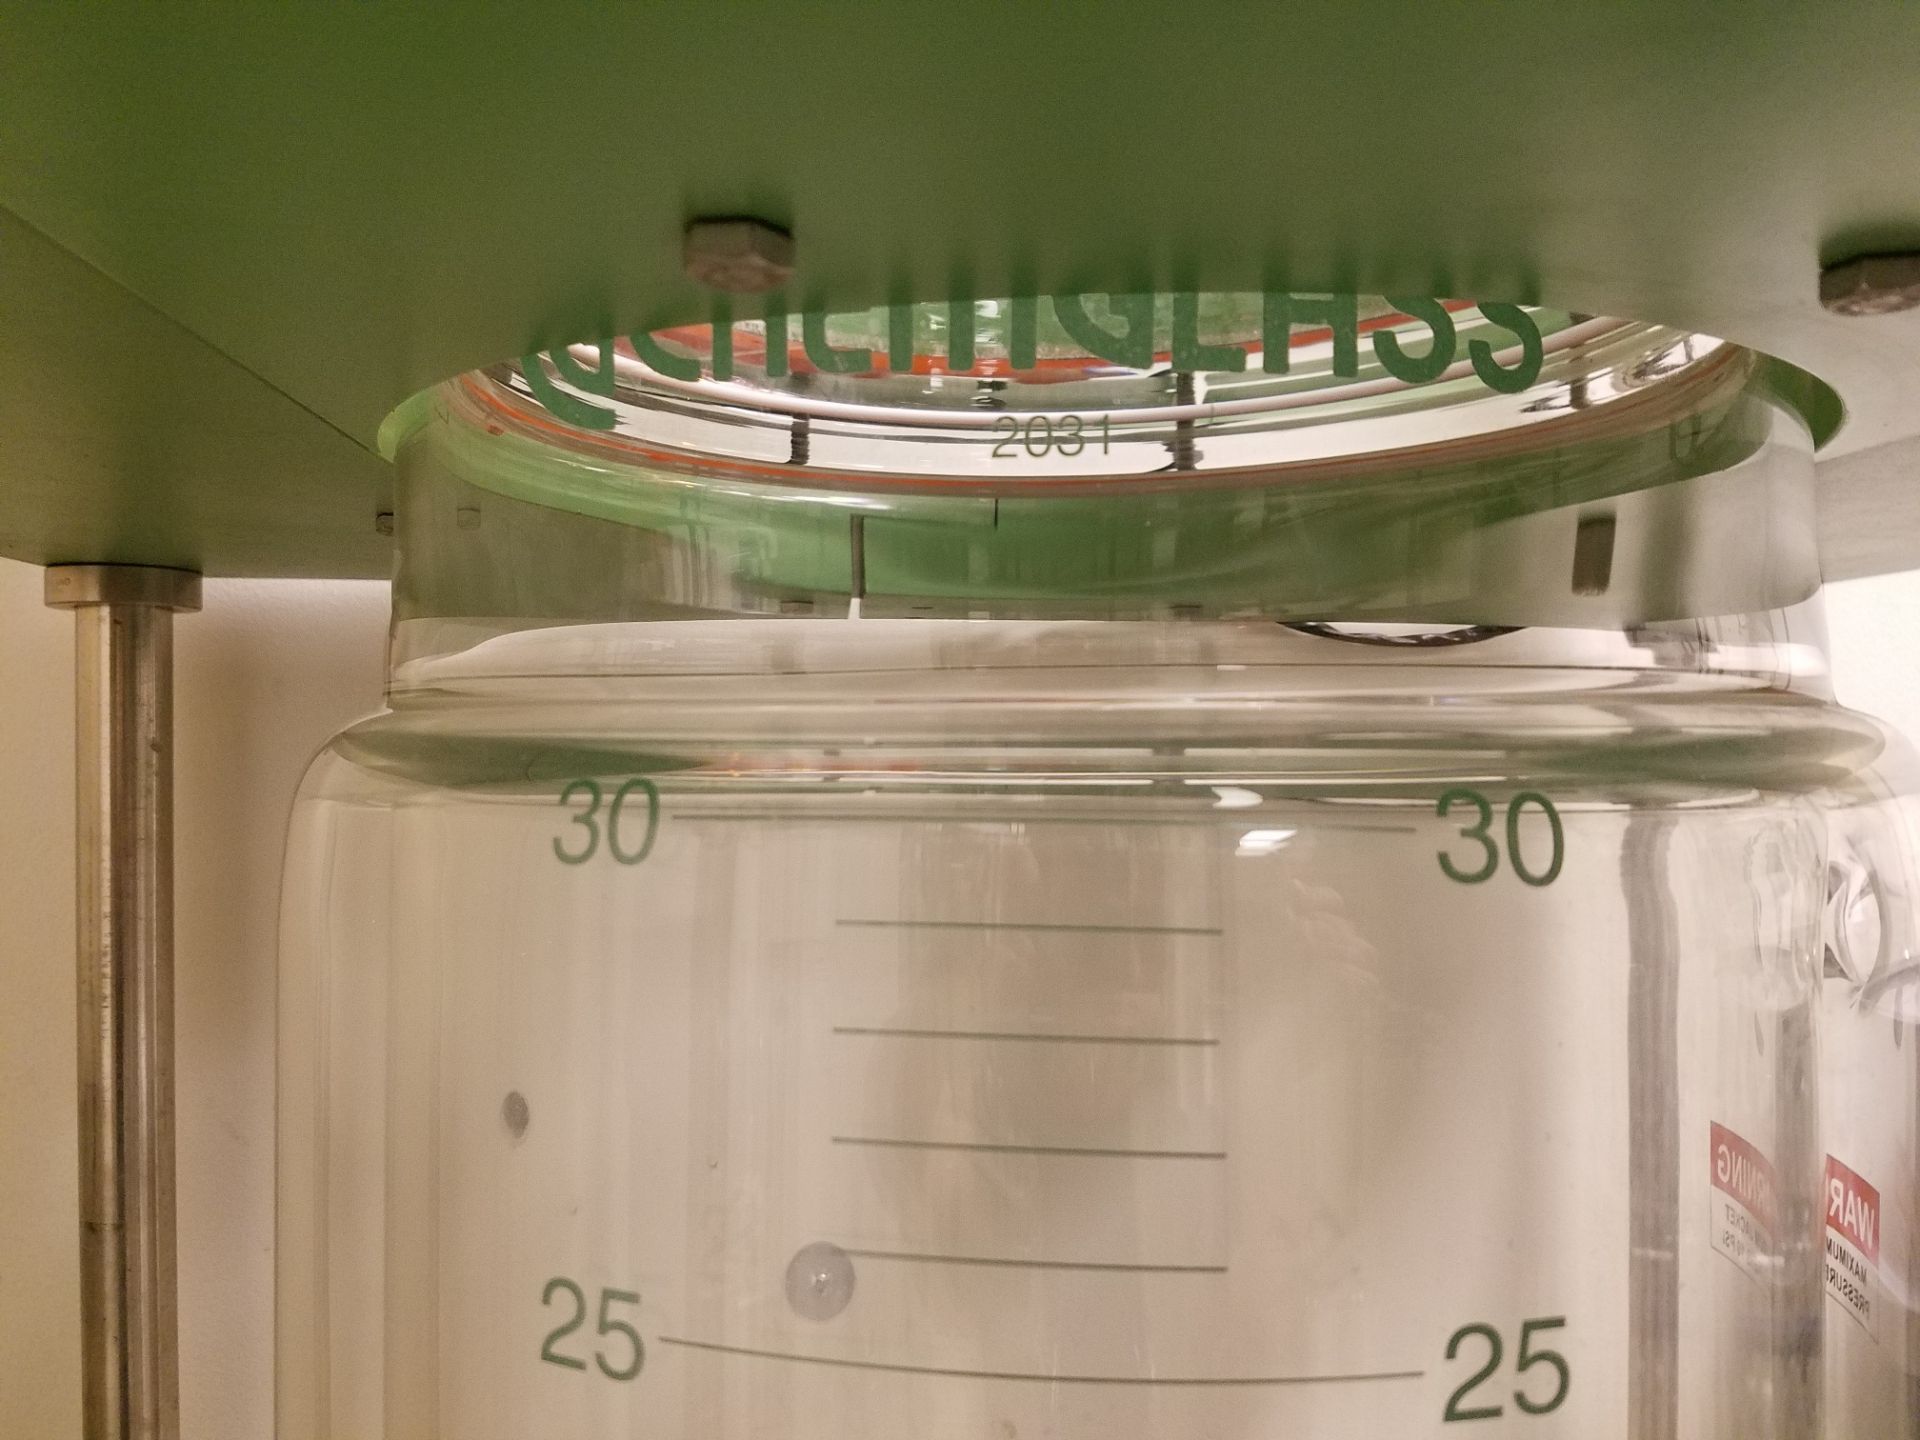 Chemglas 30 Liter Reactor, M# BI-0405-181MS, S/N 416416 - Image 3 of 5